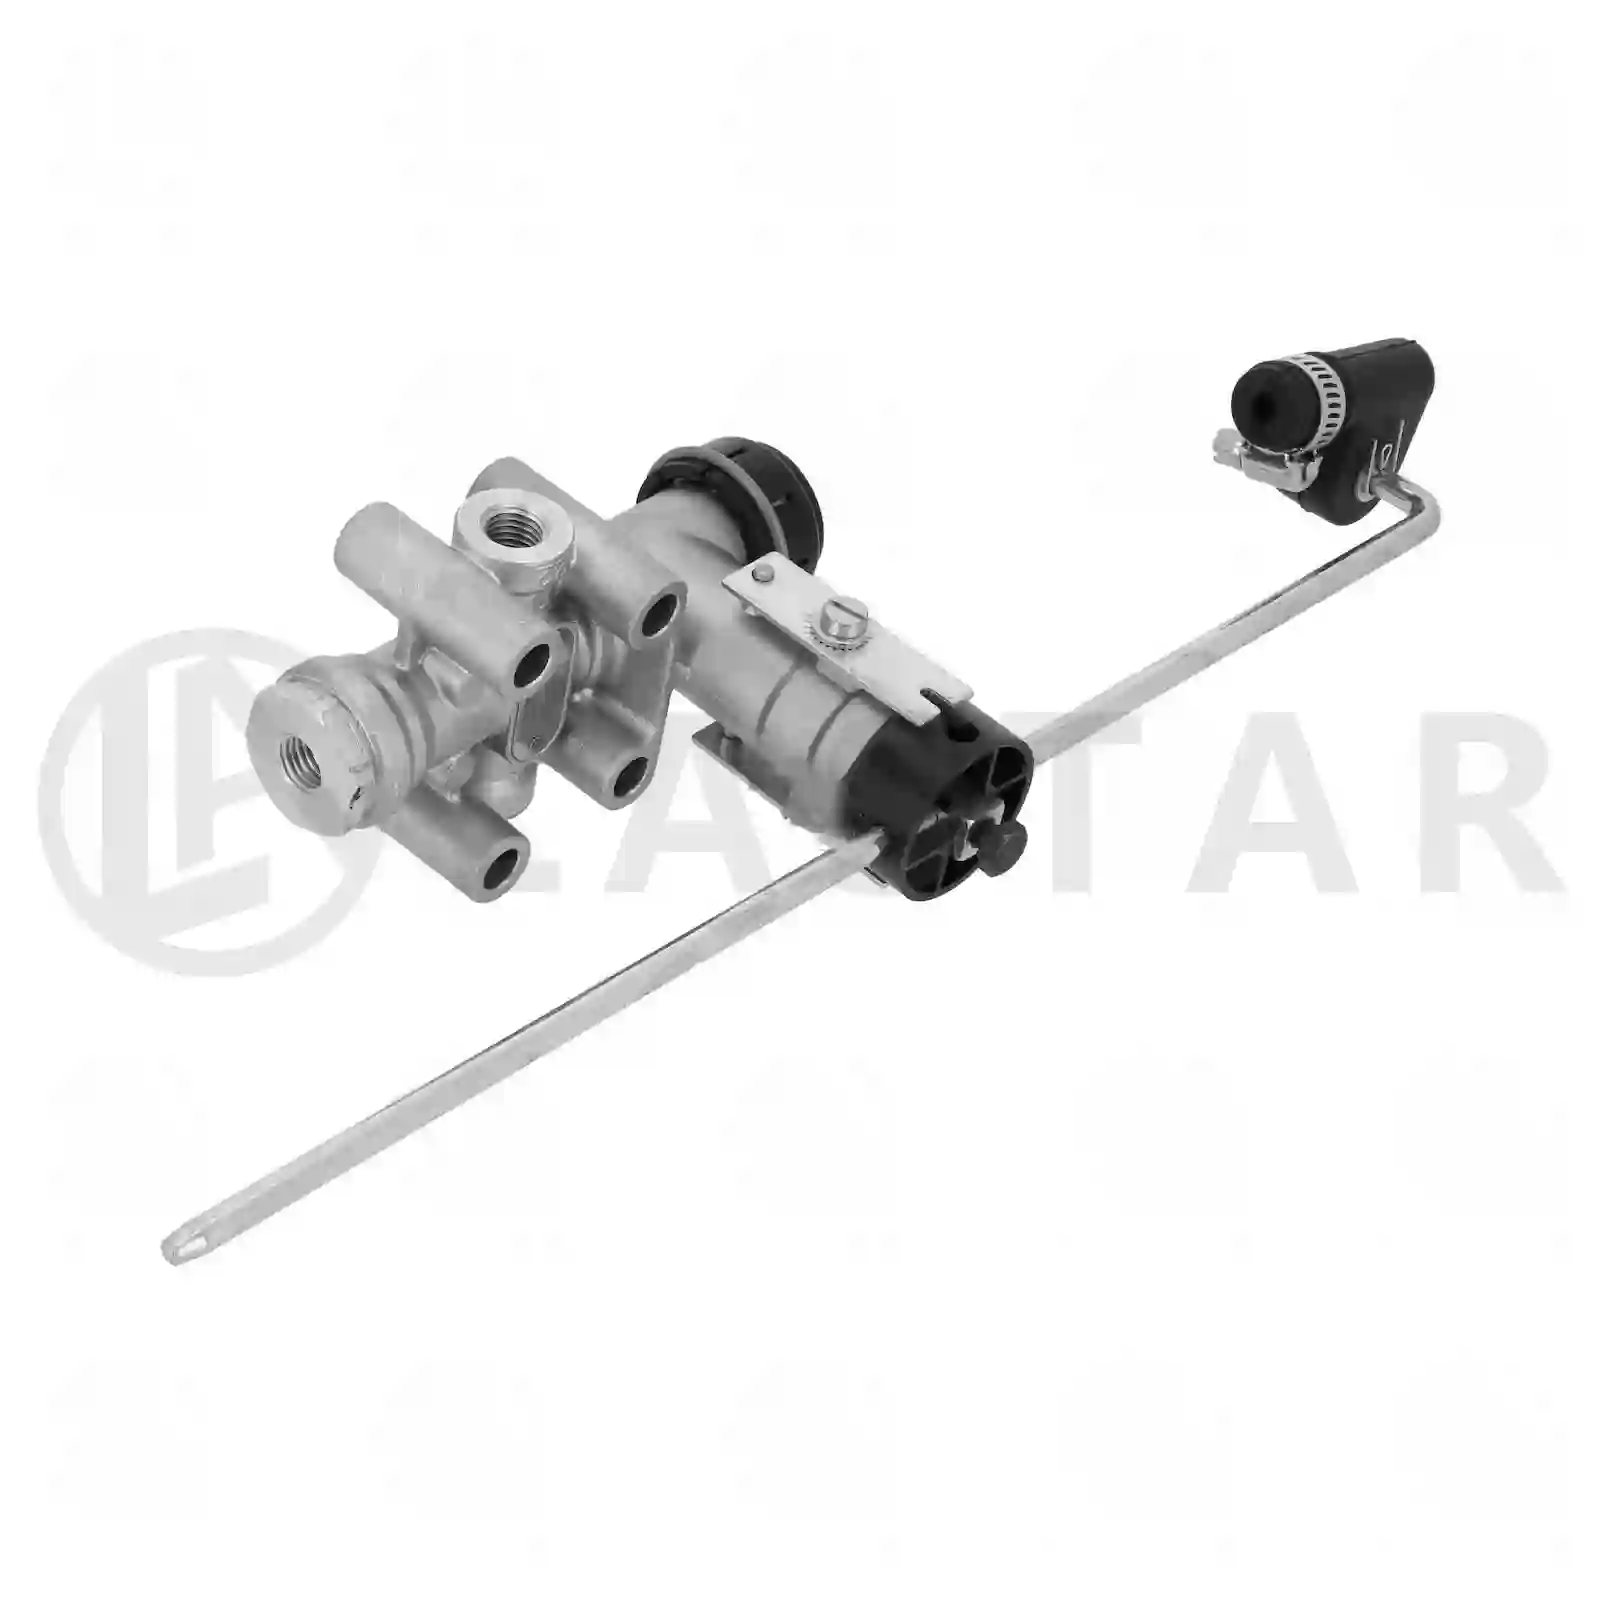  Level valve || Lastar Spare Part | Truck Spare Parts, Auotomotive Spare Parts